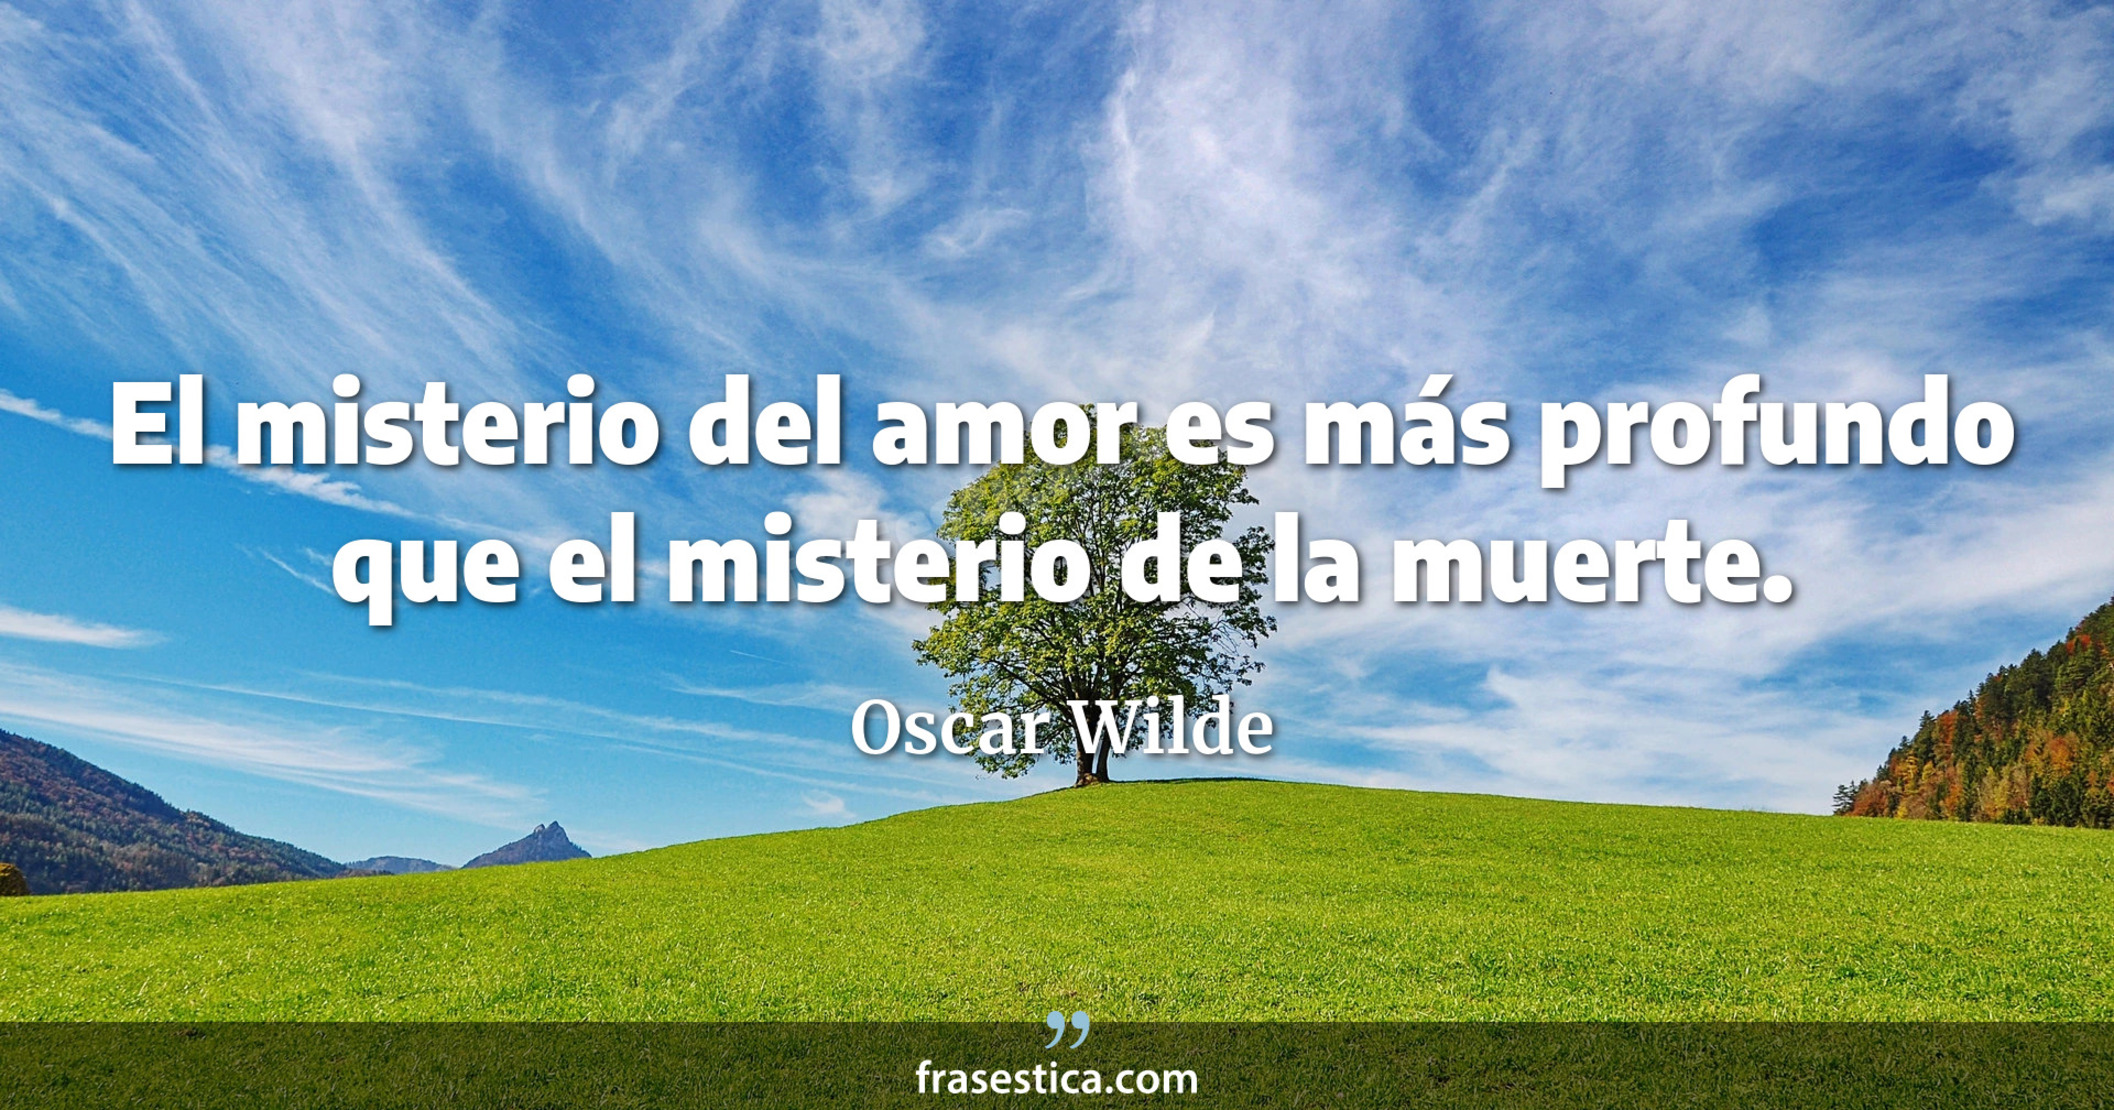 El misterio del amor es más profundo que el misterio de la muerte. - Oscar Wilde